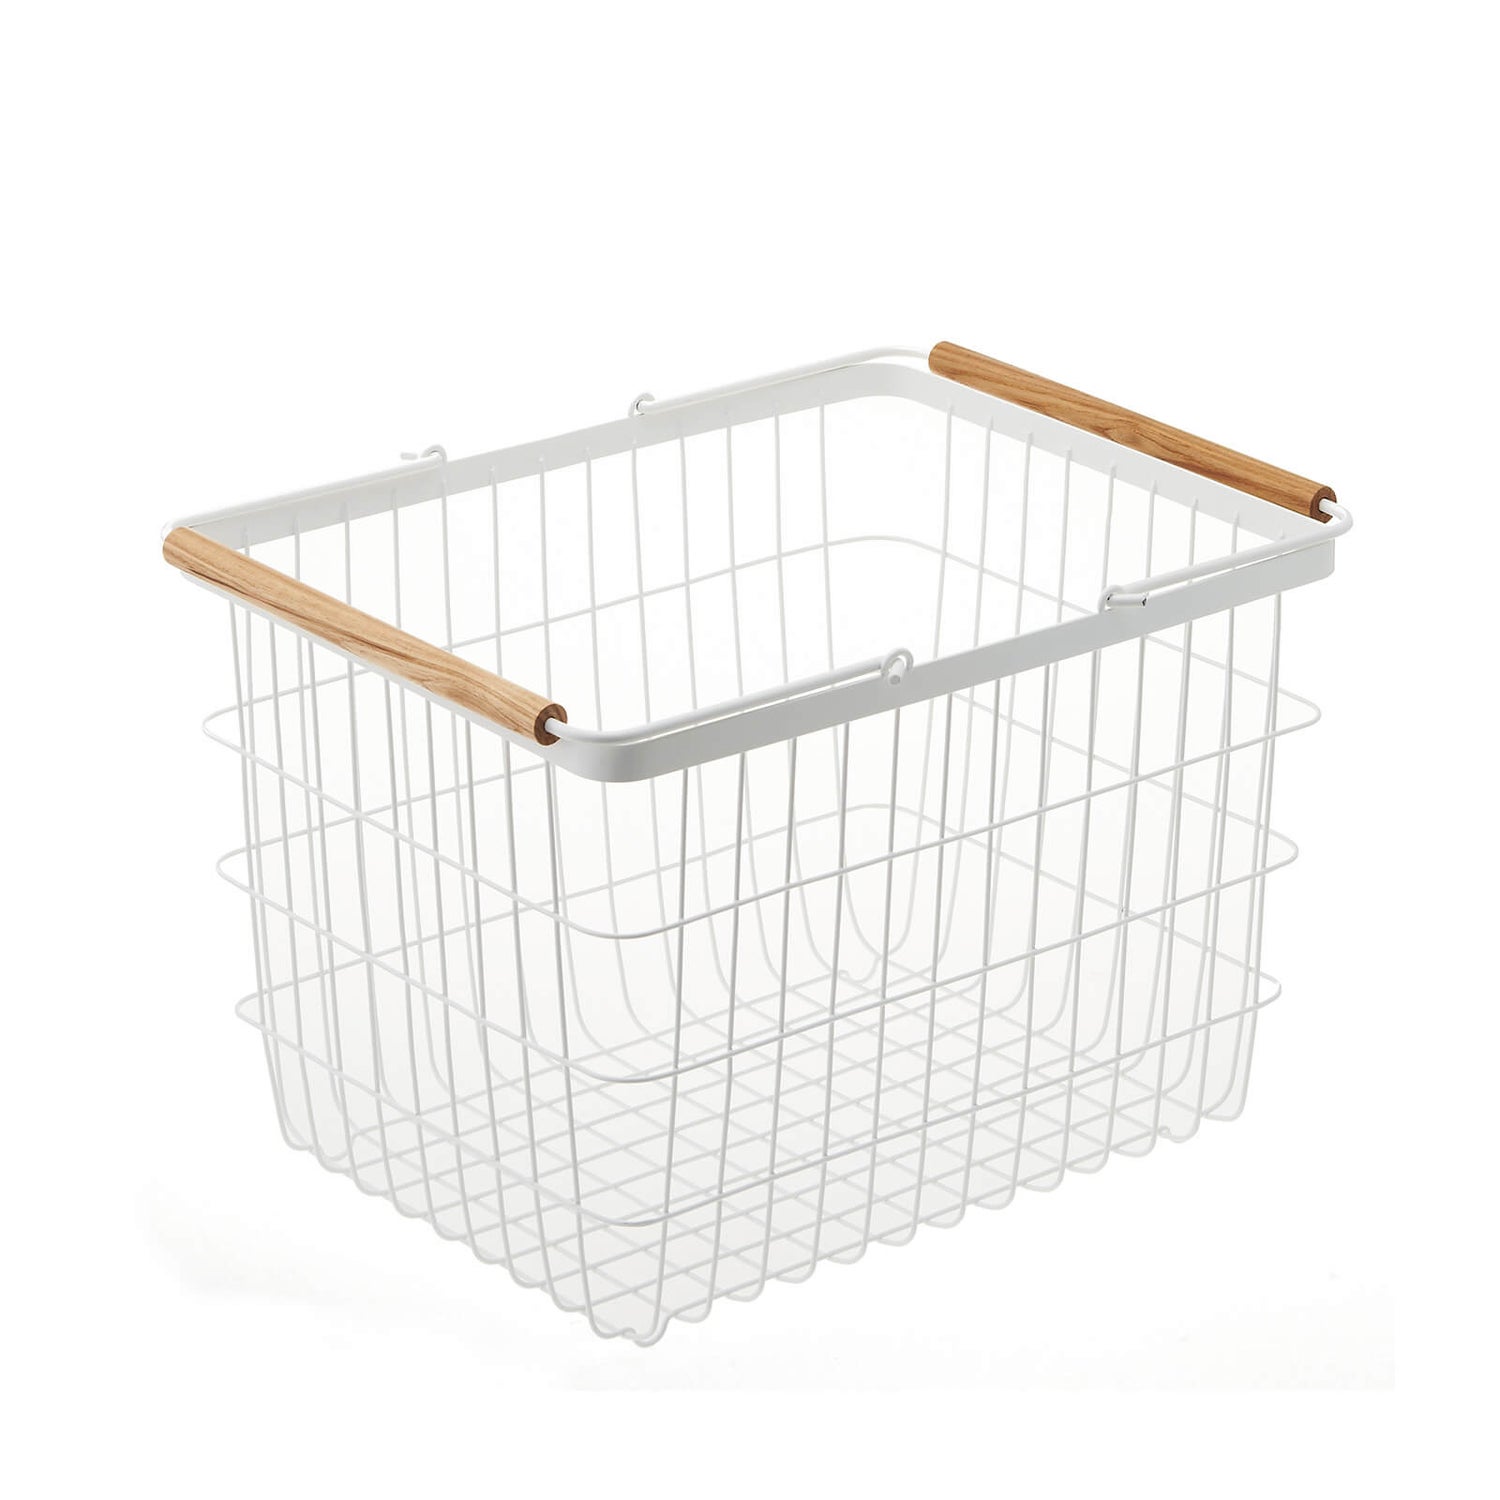 Yamazaki Tosca Wire Laundry Basket - White - Medium